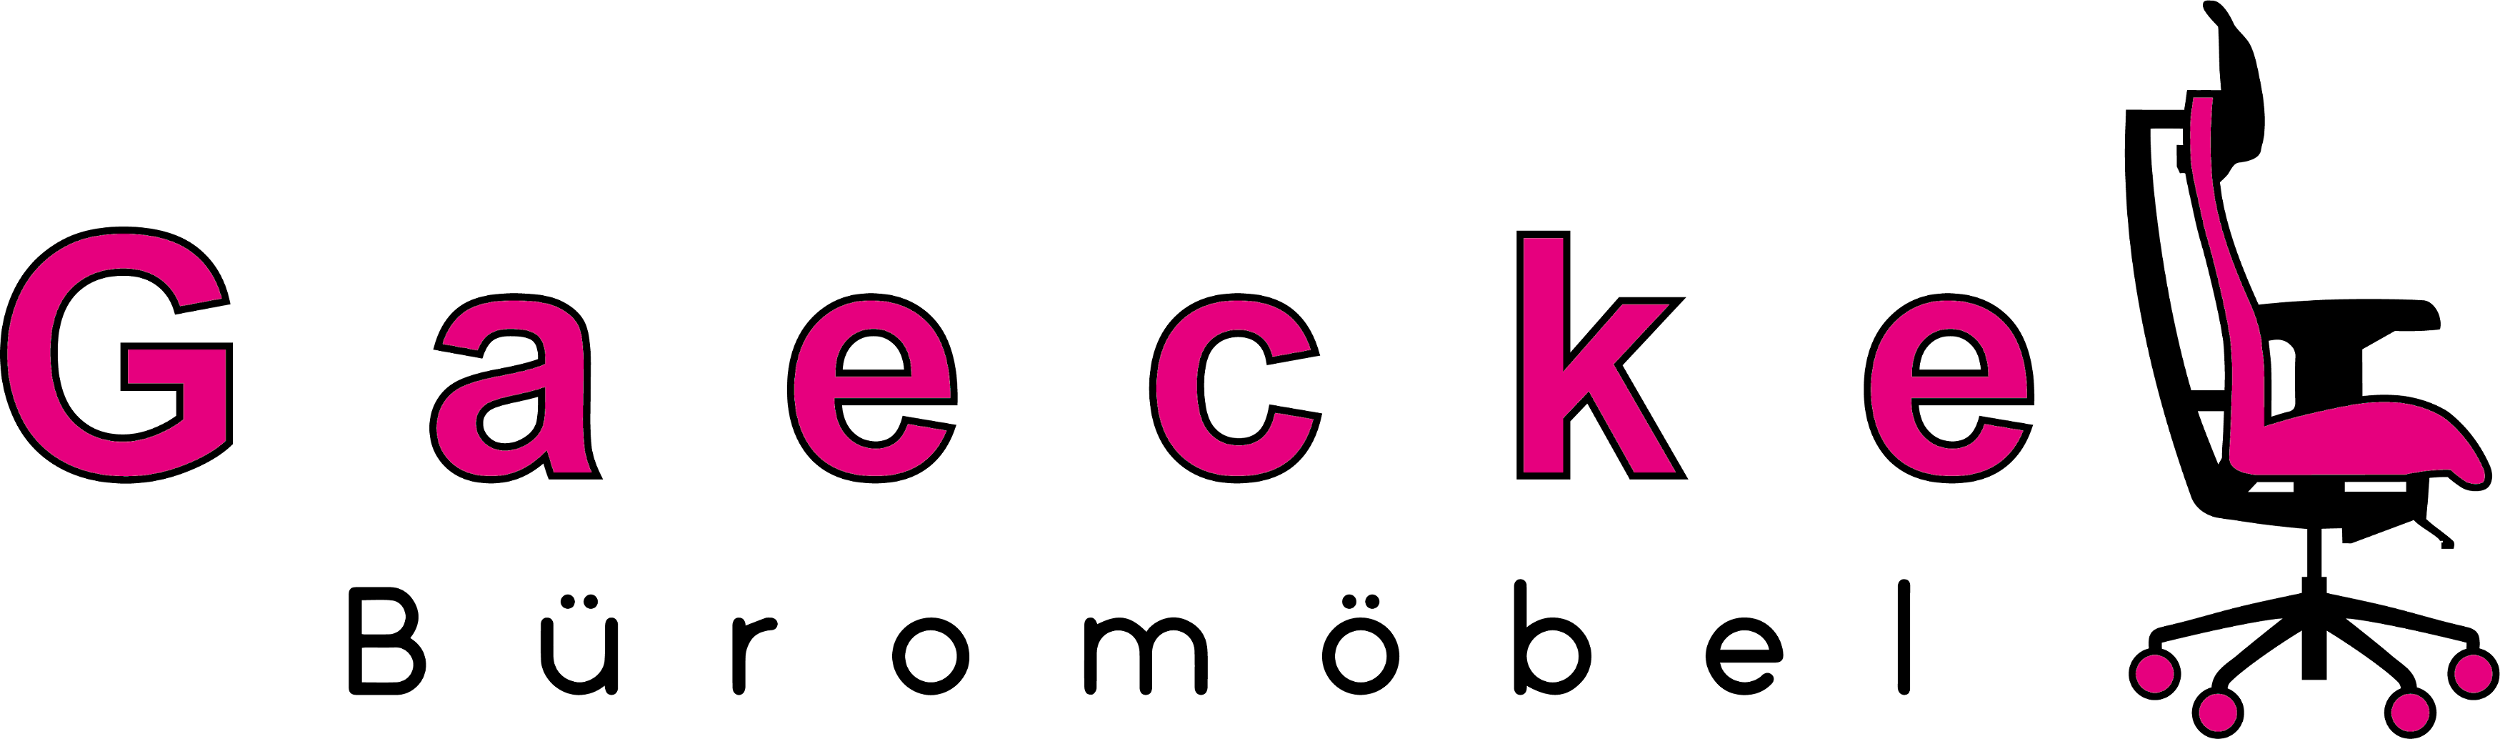 Gaeckel-Shop-Logo